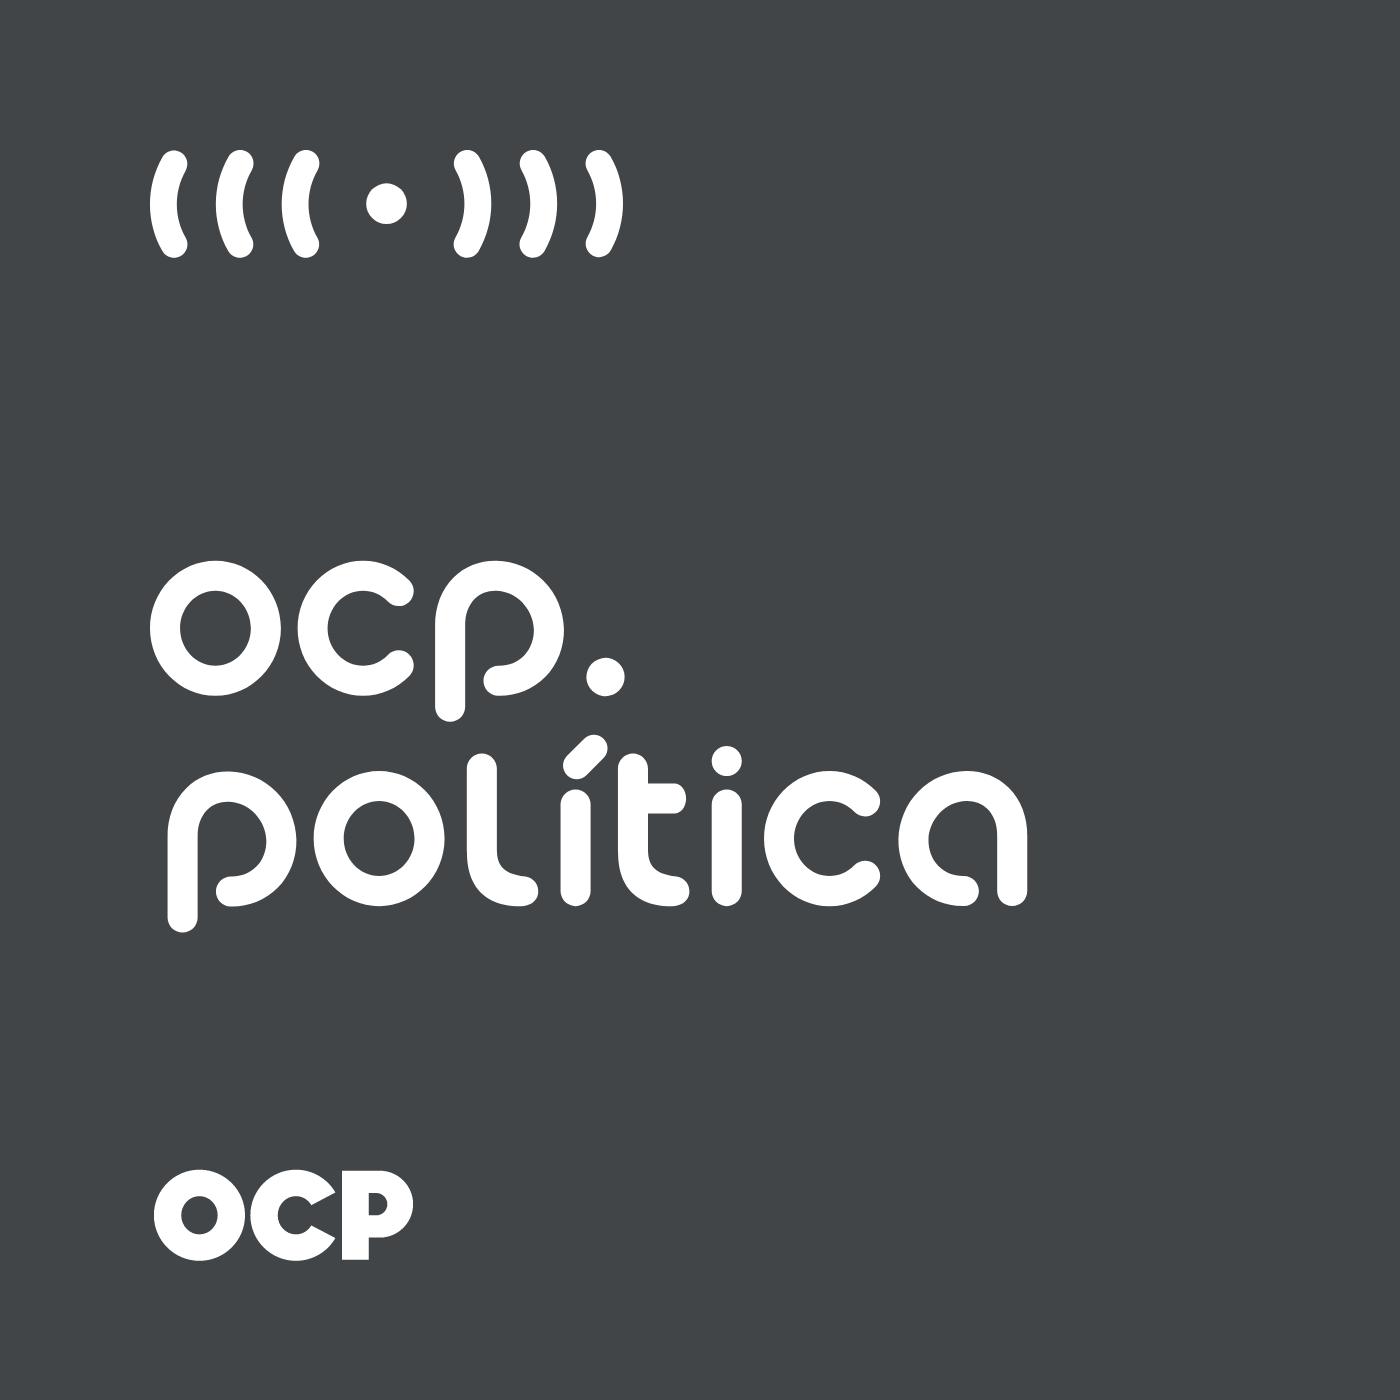 Podcast OCP Política: "Bora Votar" do TSE é a nova campanha para o eleitorado jovem